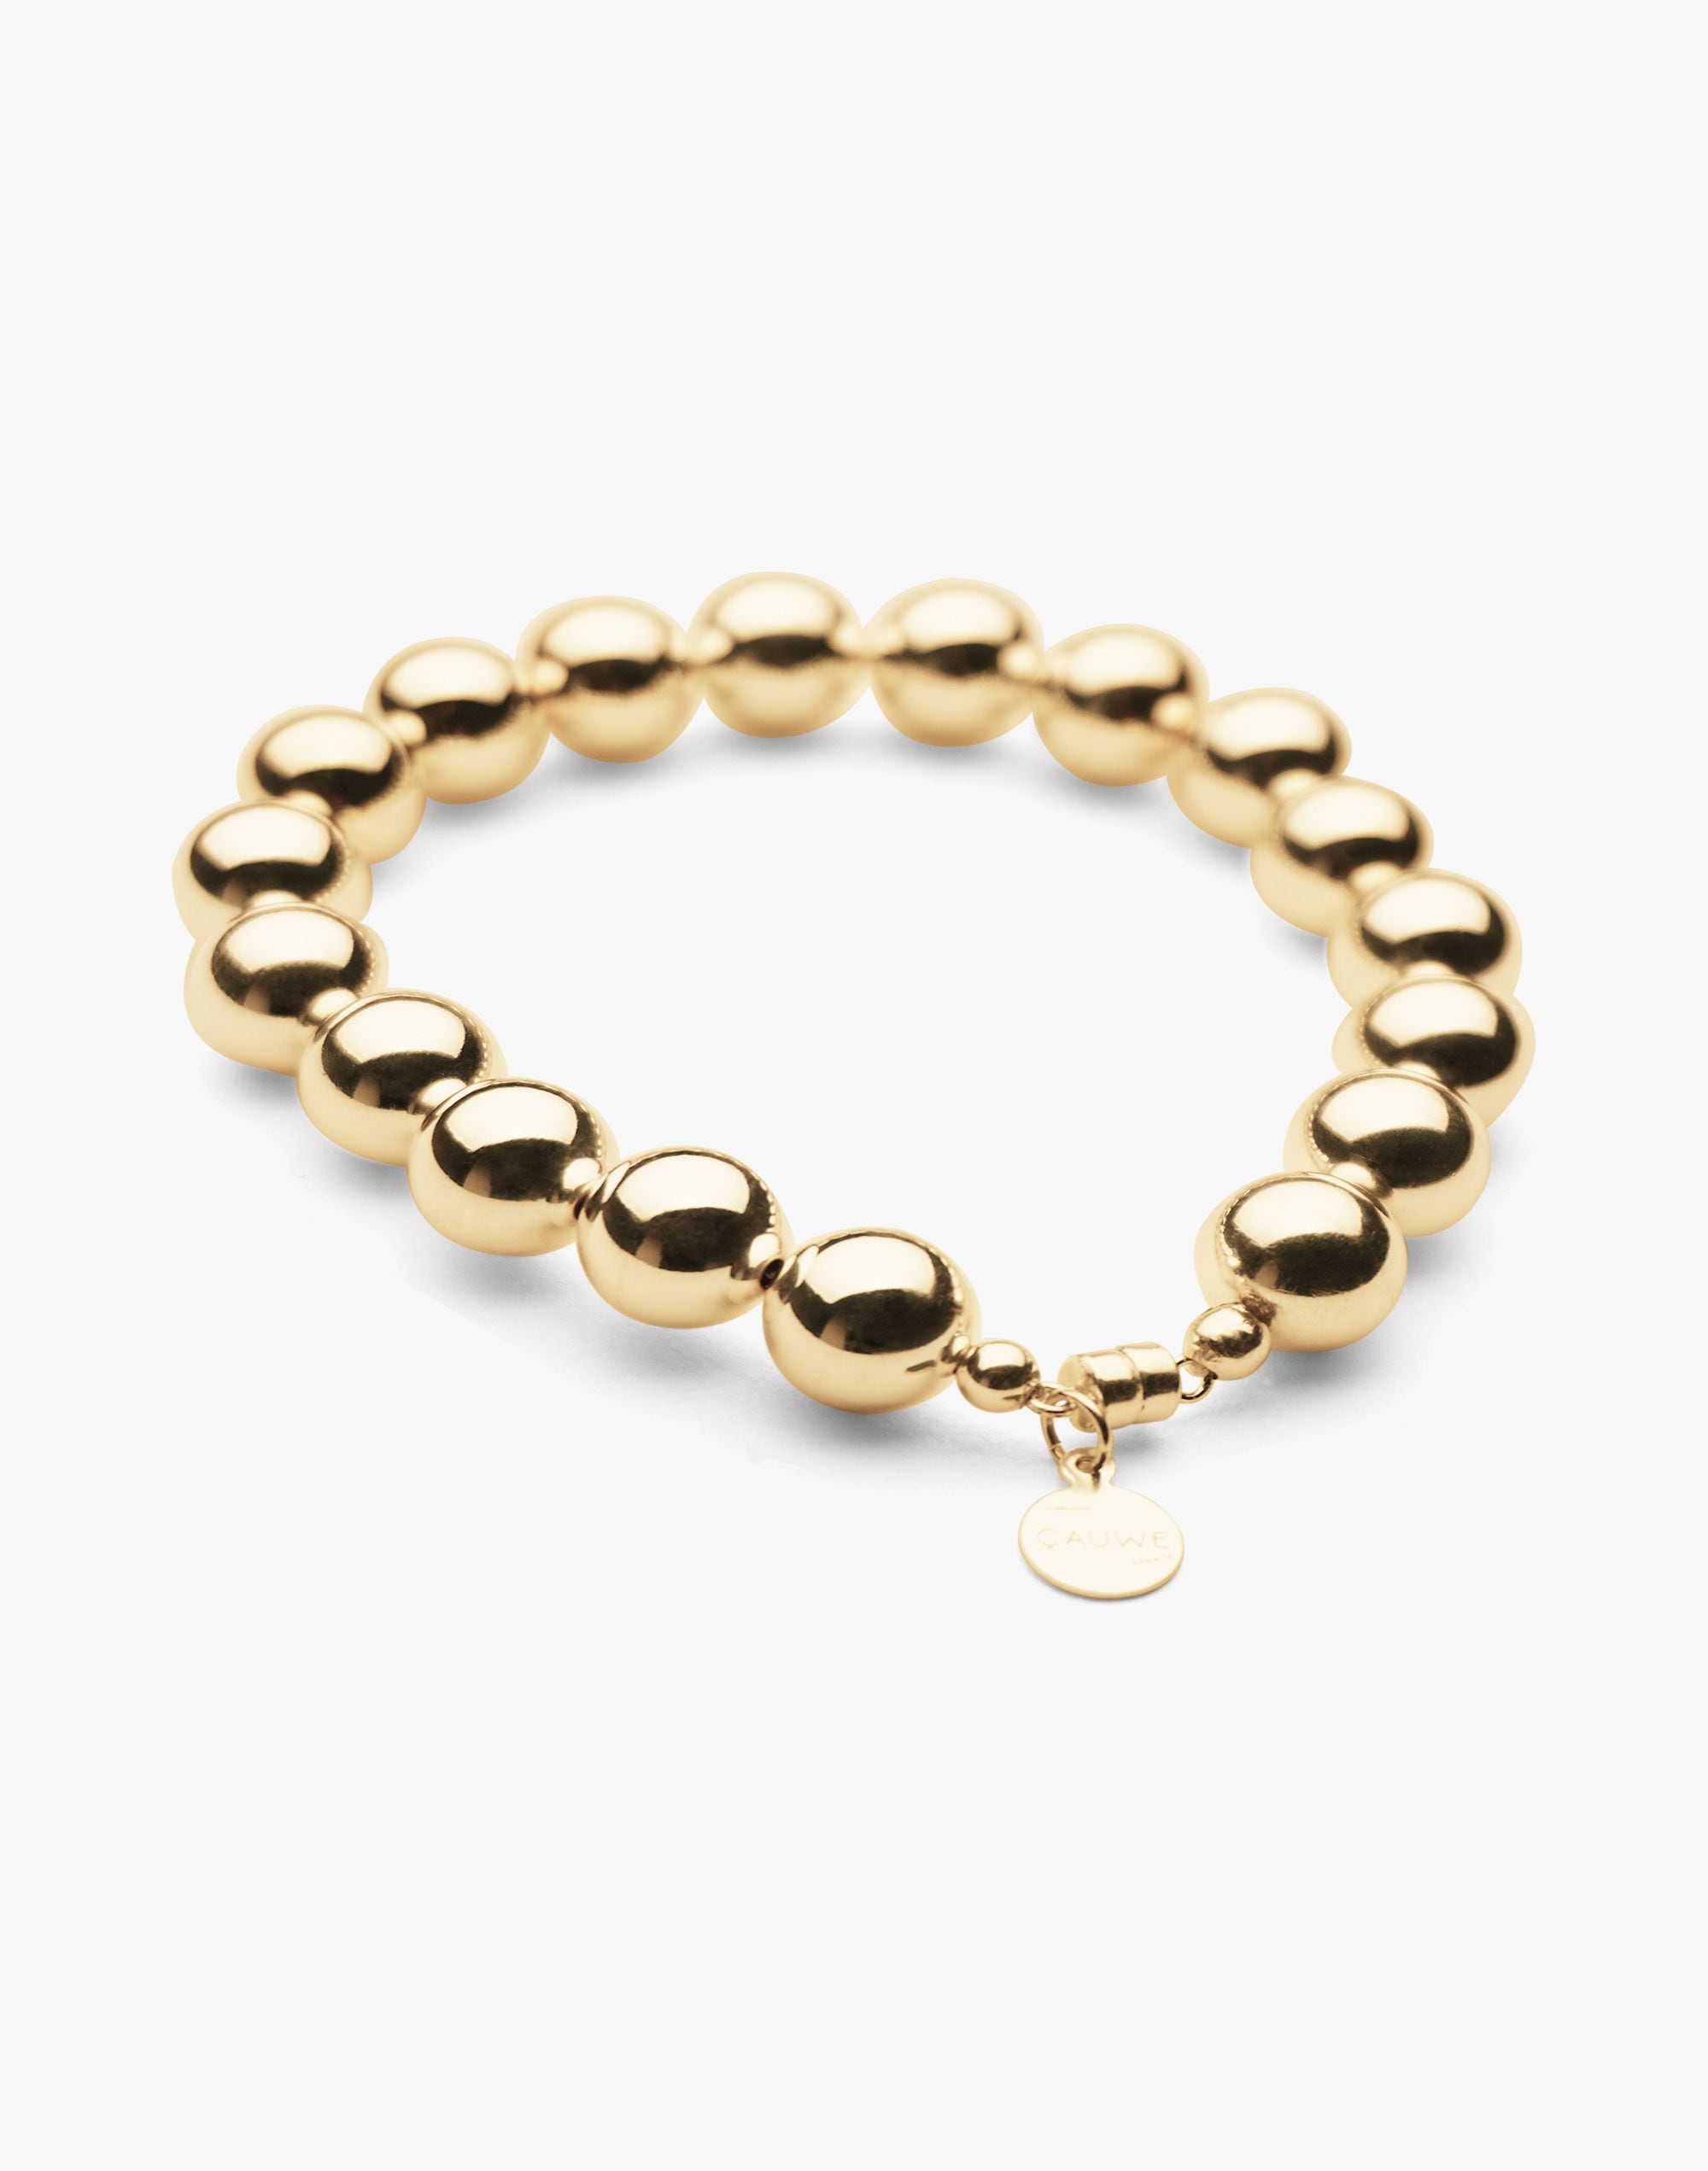 Charlotte Cauwe Studio Bead Bracelet in Gold 10mm